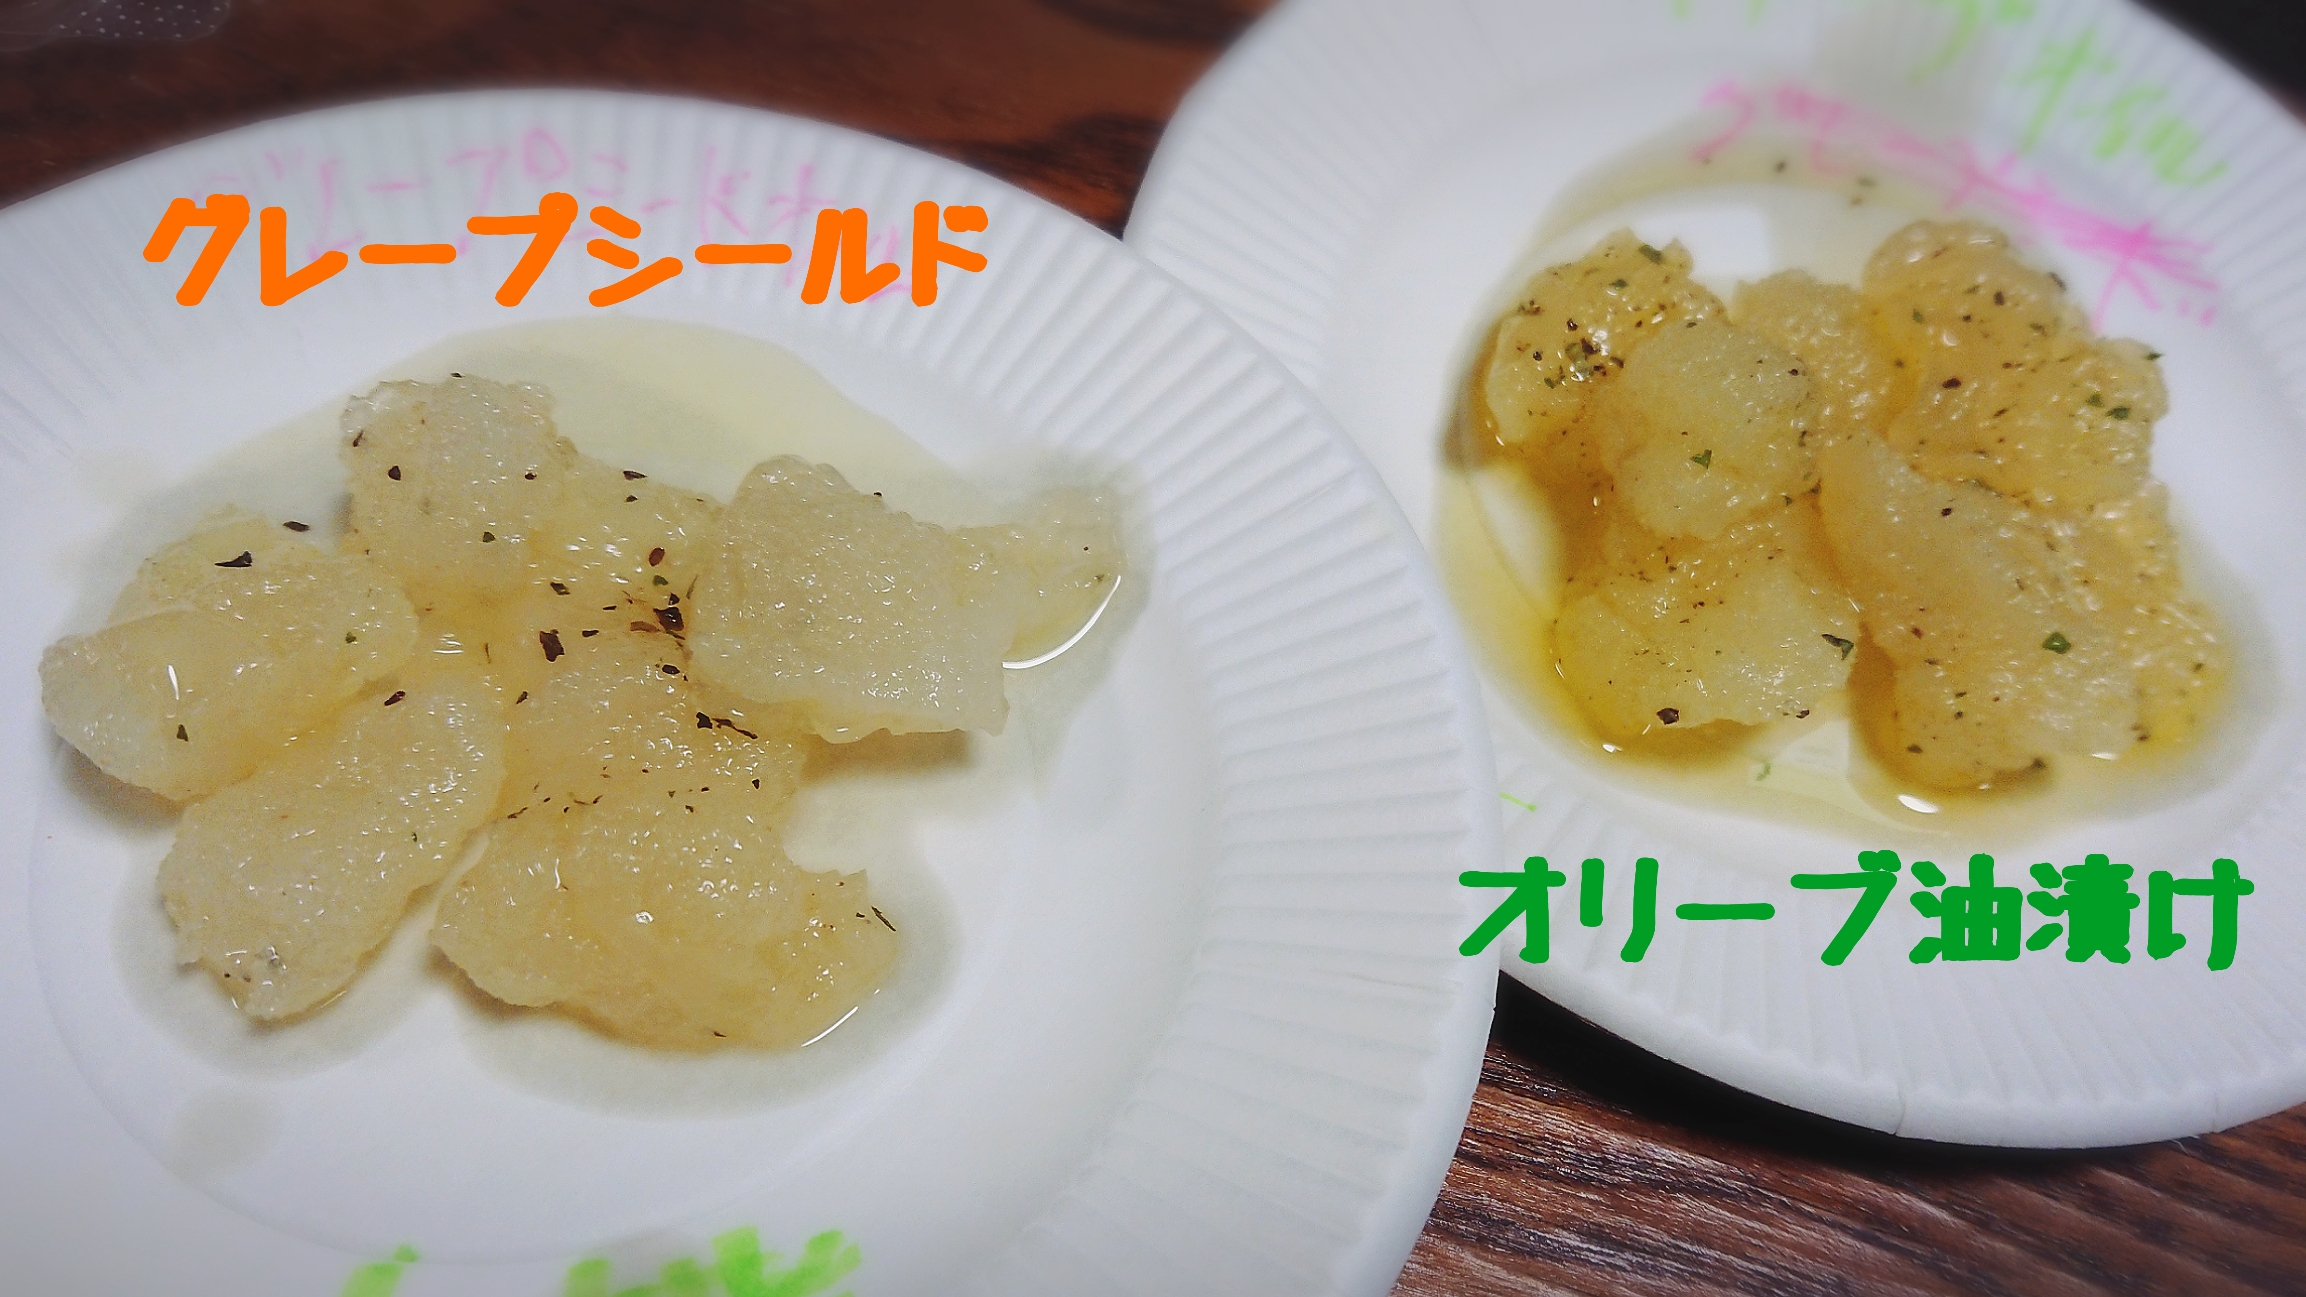 クラゲ加工食品が神戸セレクションを受賞 谷五郎の笑って暮らそう ラジオ関西 Jocr 558khz